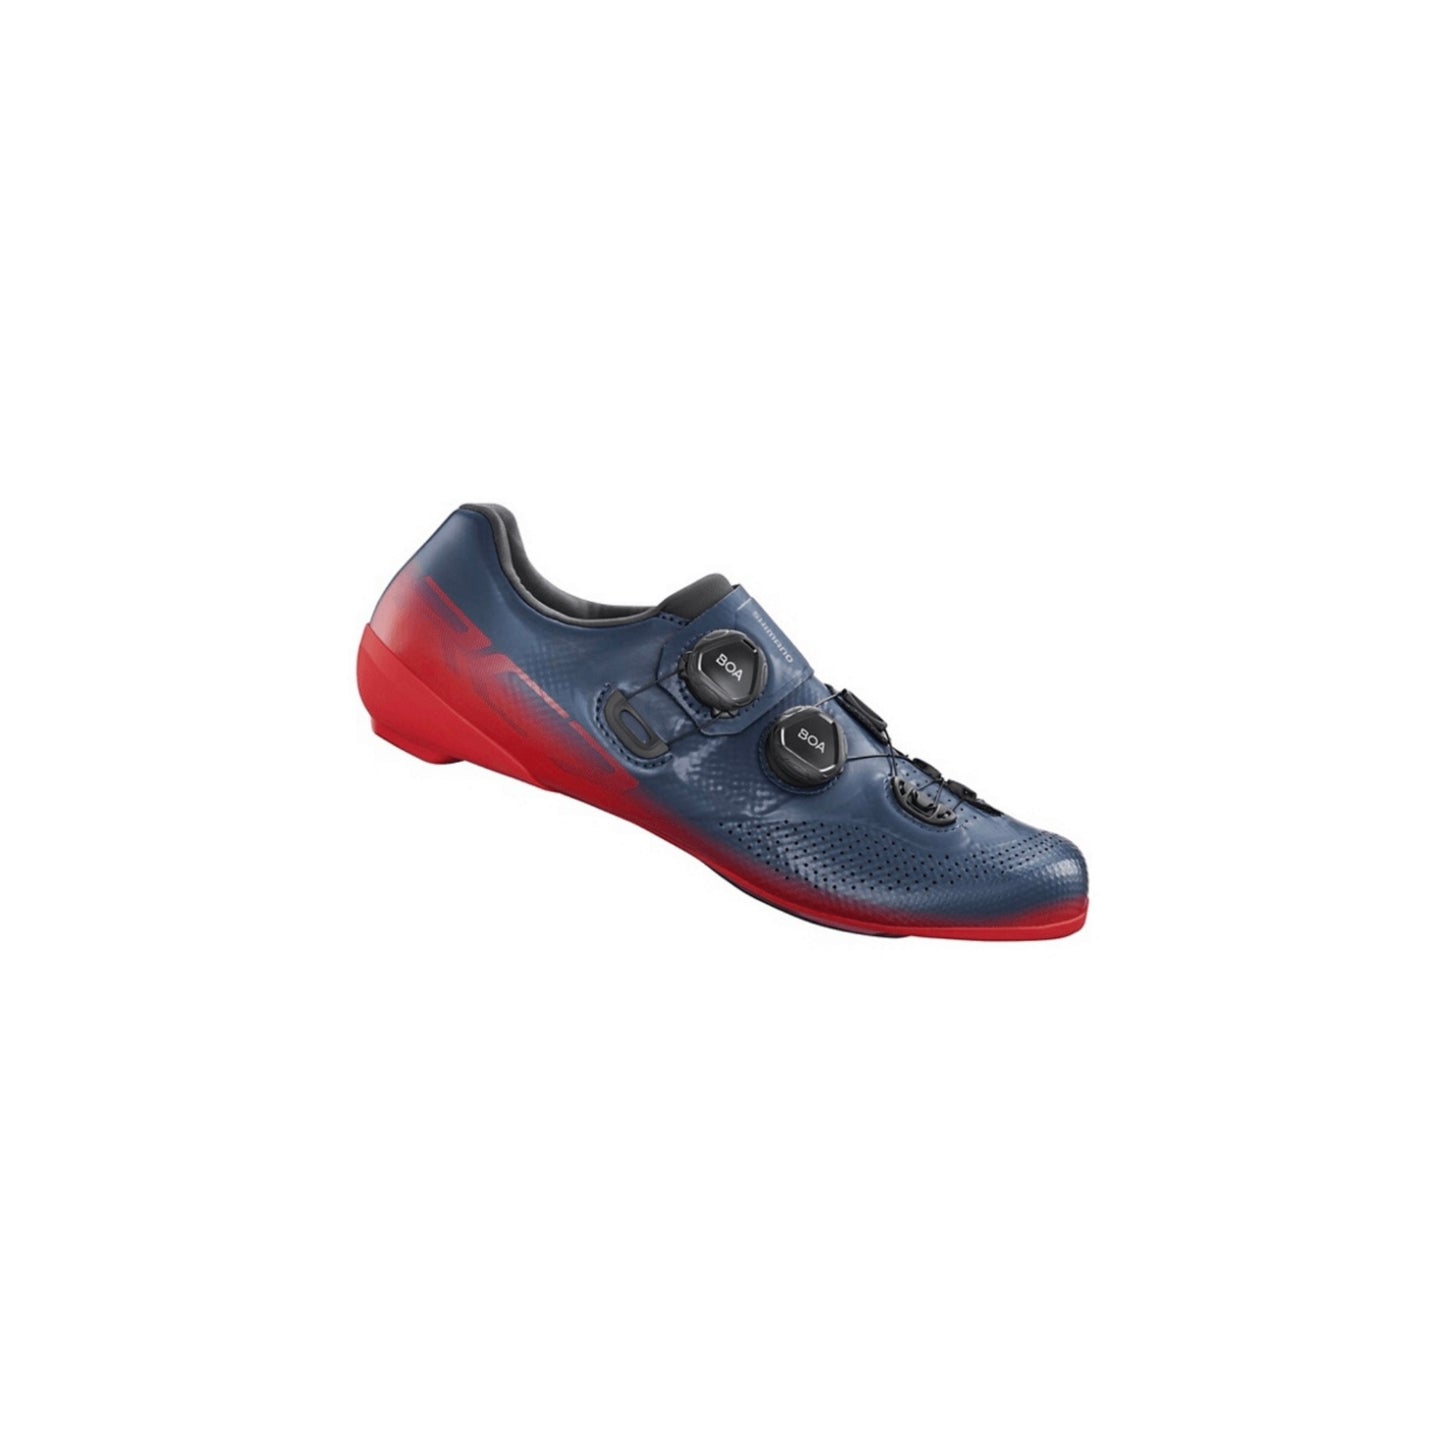 Zapatillas Shimano Rc702 Red Blue